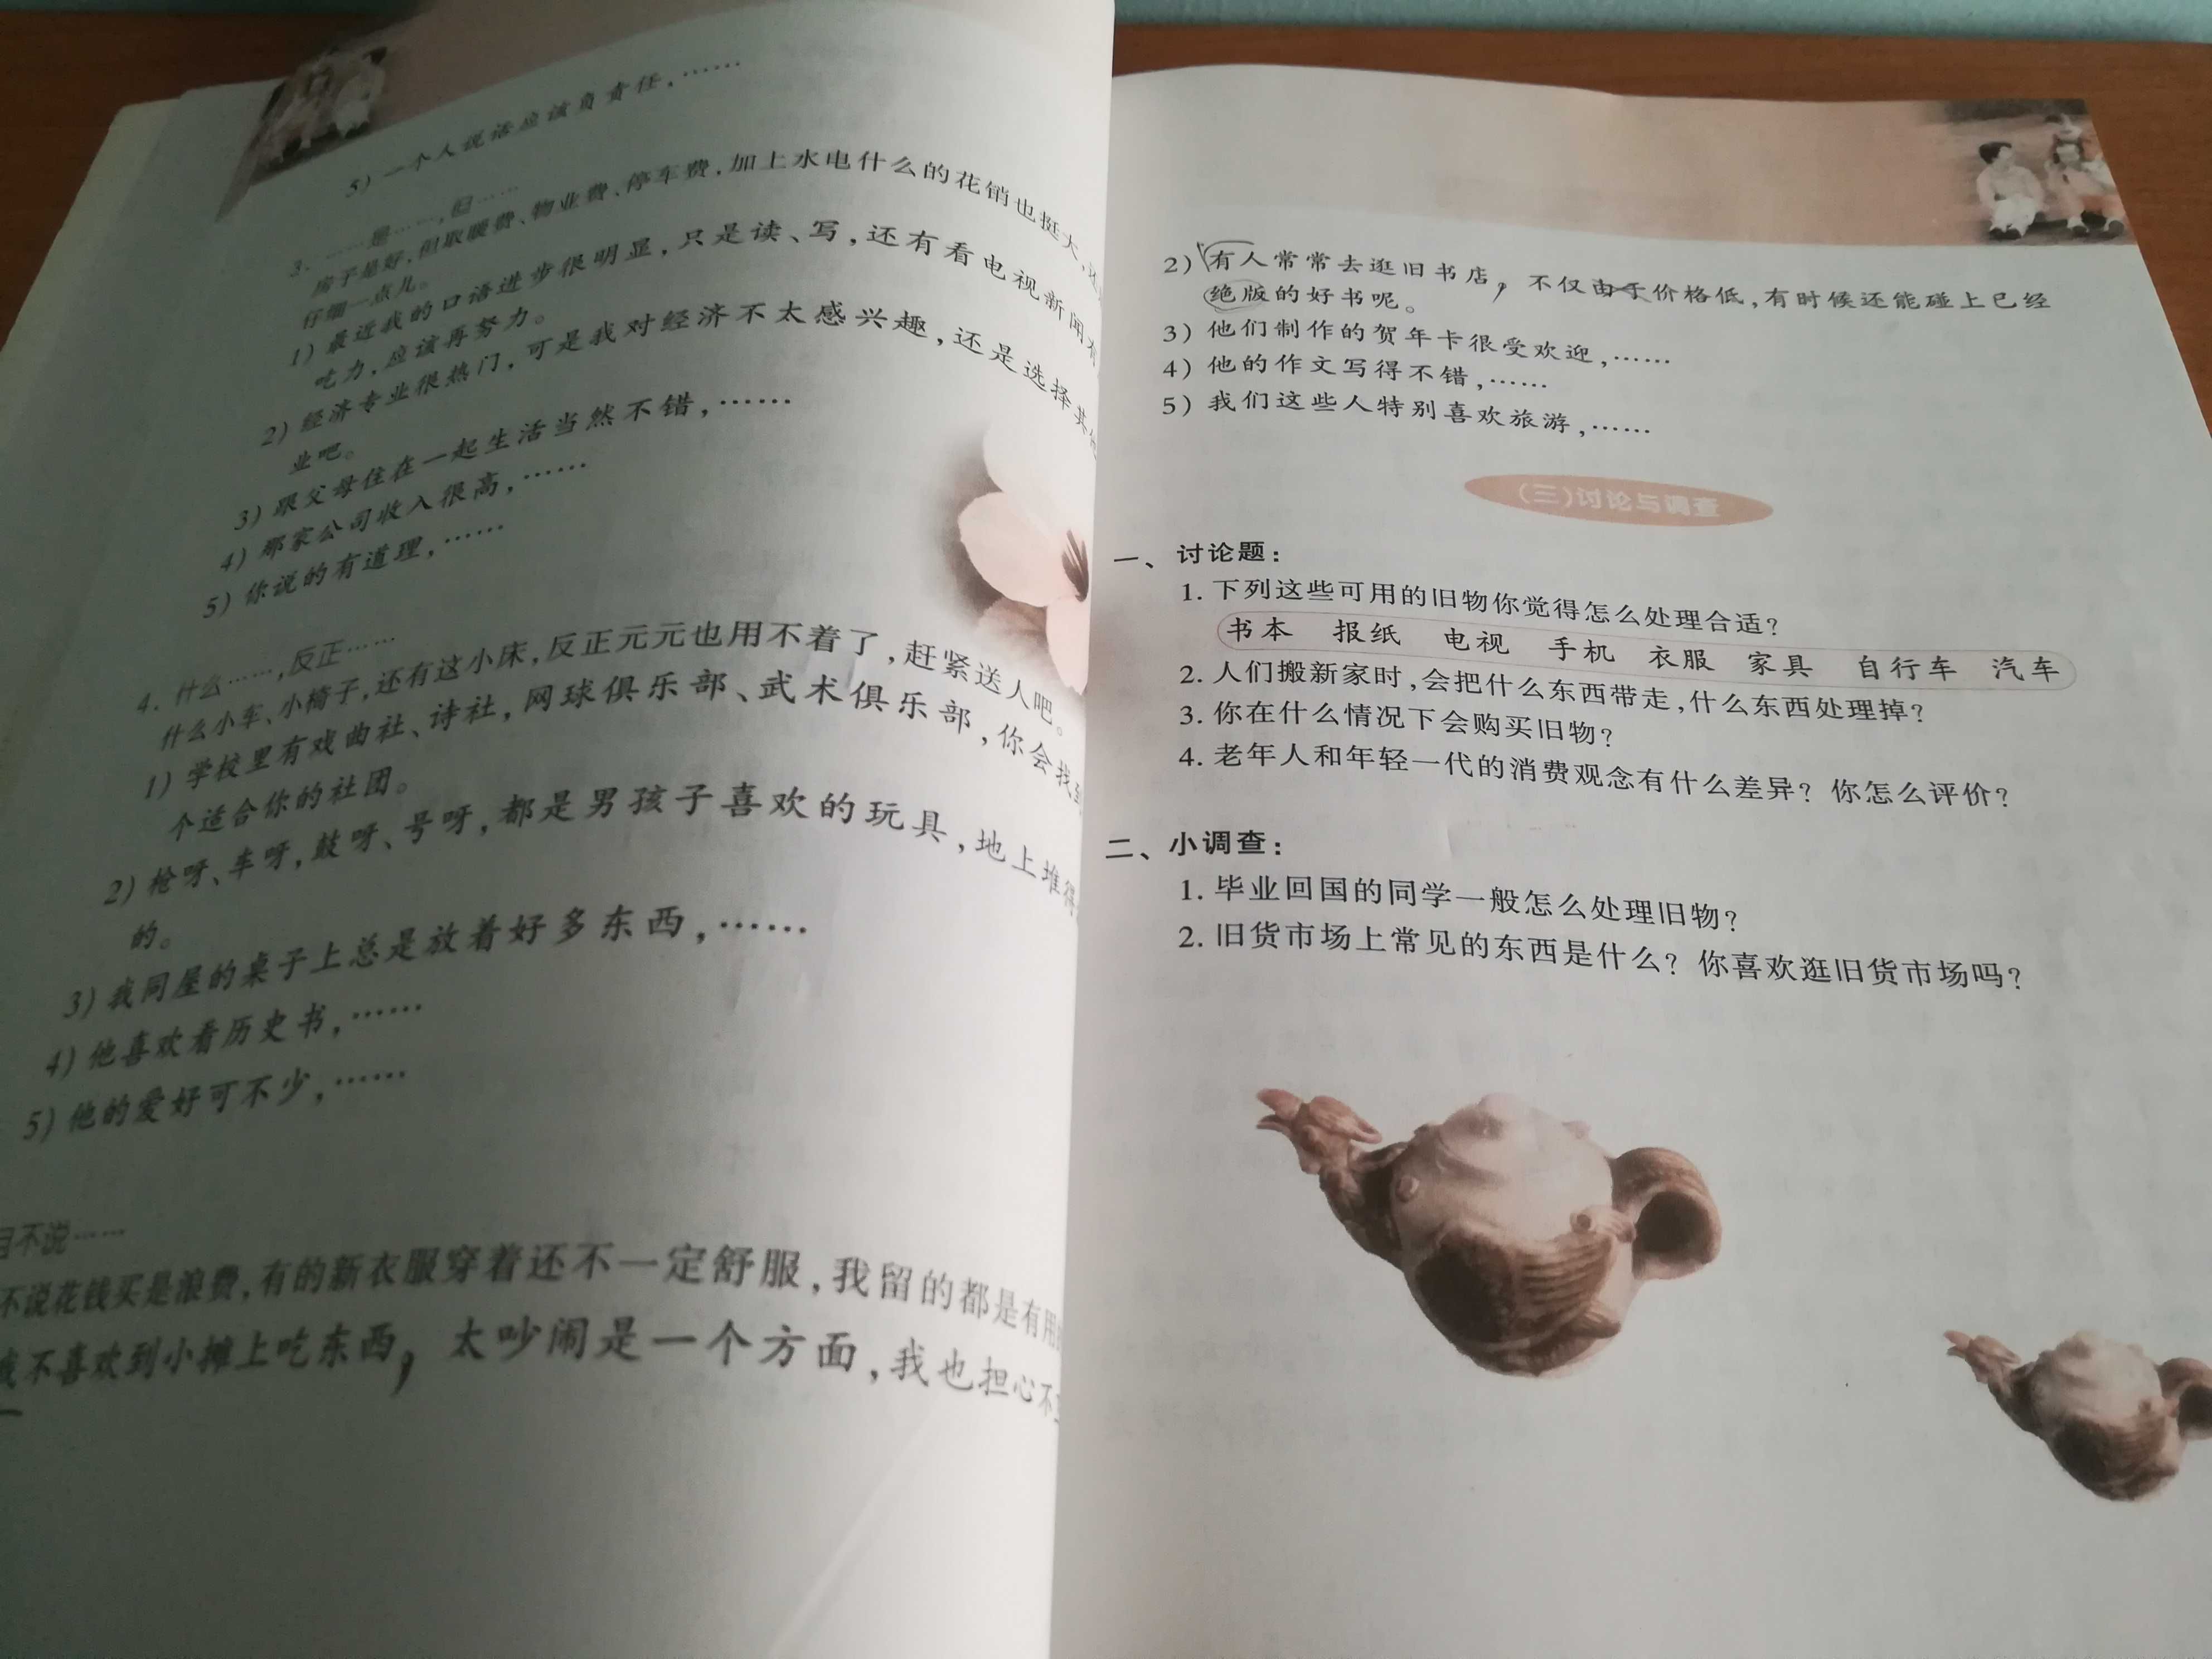 Advanced Spoken Chinese, 高级汉语口语 1，Liu Yuanman, Peking University Press